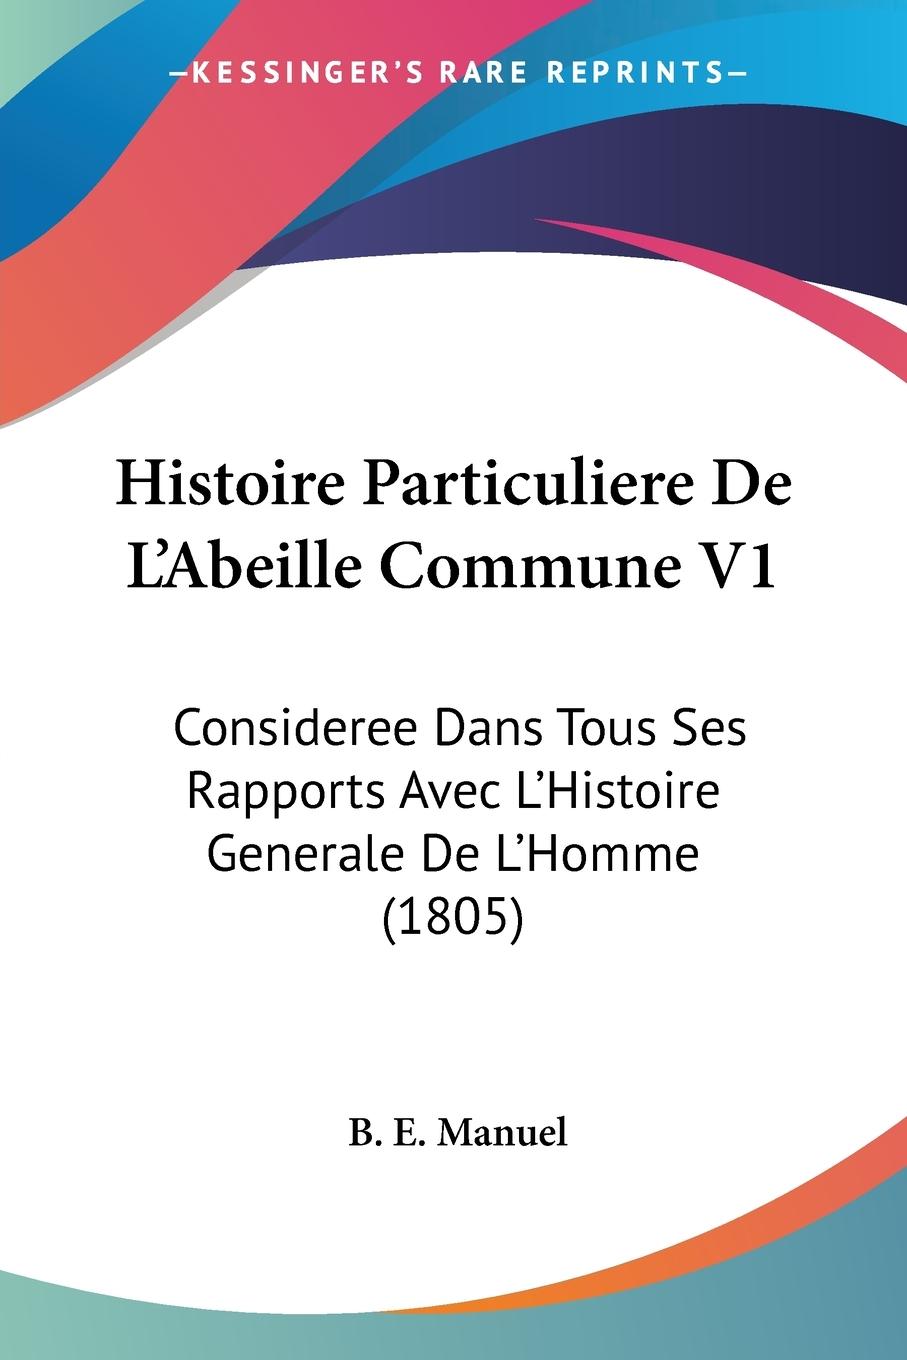 Histoire Particuliere De L Abeille Commune V1 - Manuel, B. E.